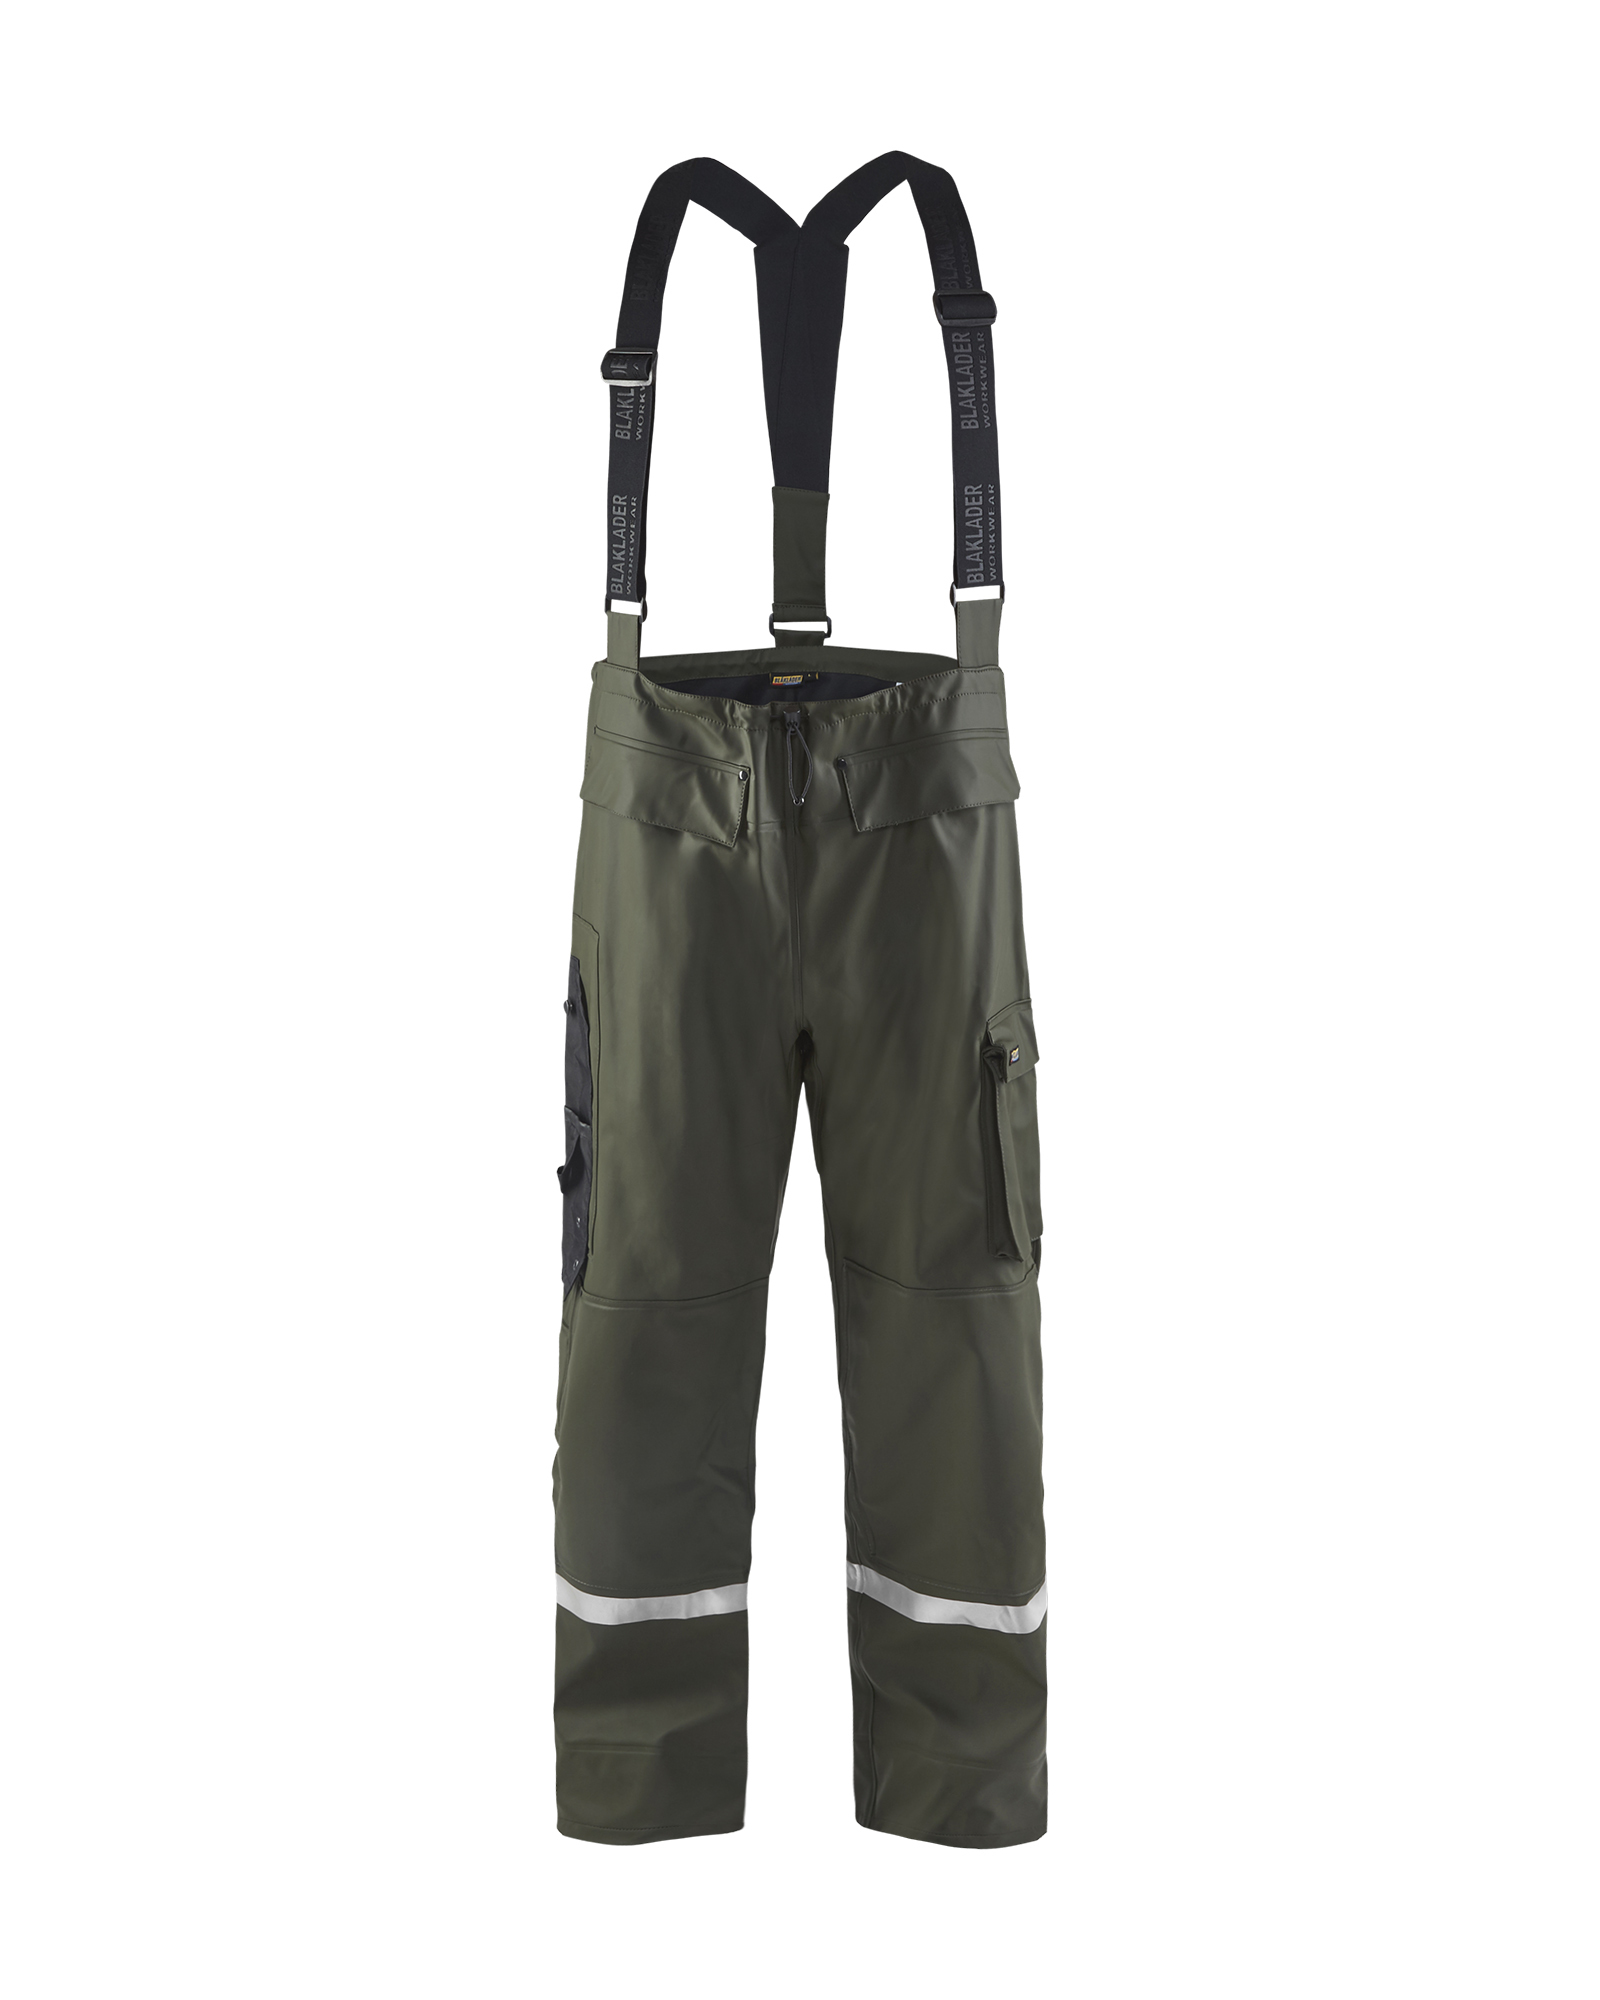 Pantalon de pluie à bretelles haute-visibilité niveau 2 Blåkläder 1302 Vert armée Blaklader - 130220034600